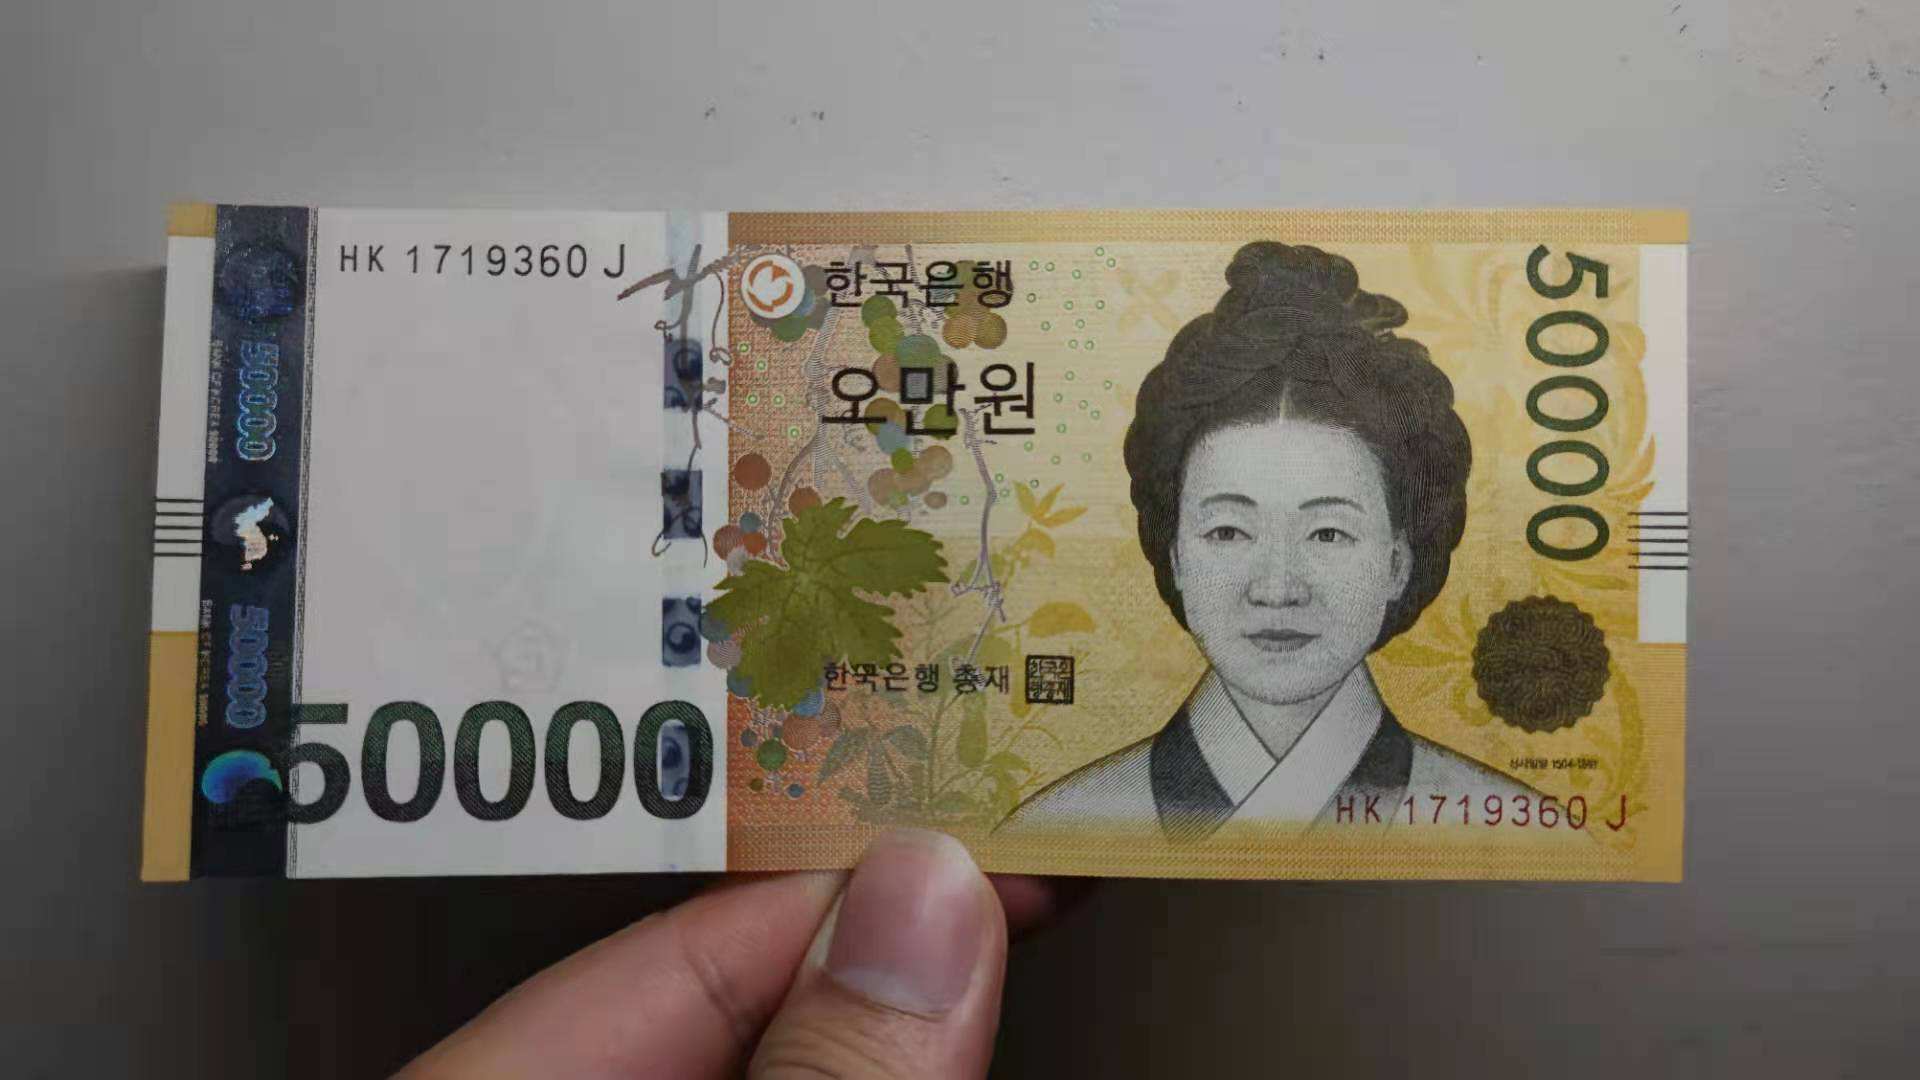 五千韩币图片